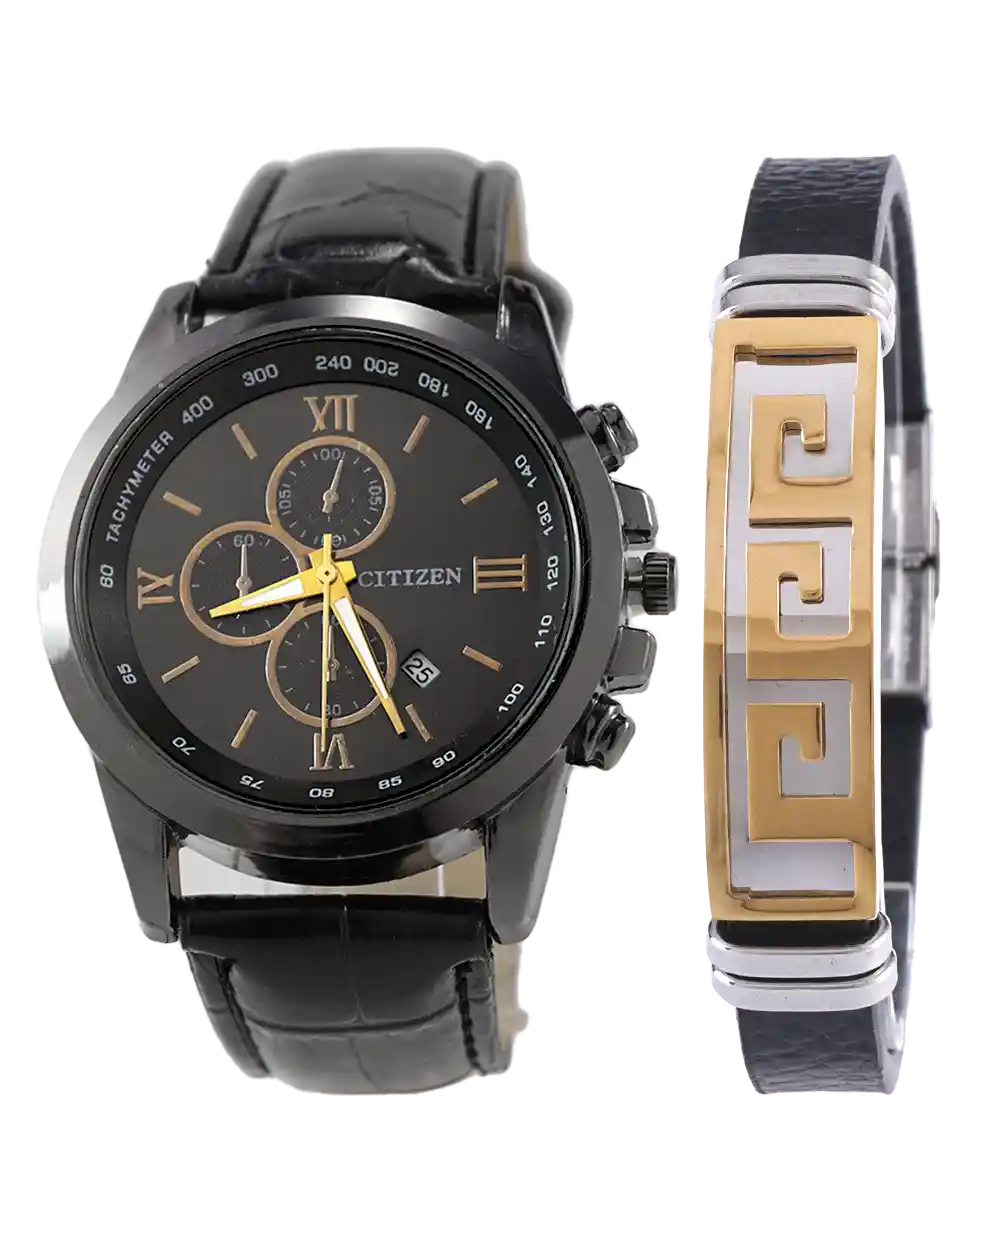 خرید ست ساعت مچی و دستبند مردانه سیتیزن CITIZEN مدل 1602 با بهترین قیمت همراه با ارسال رایگان و جعبه مخصوص | ست دستبند و ساعت مردانه چرمی